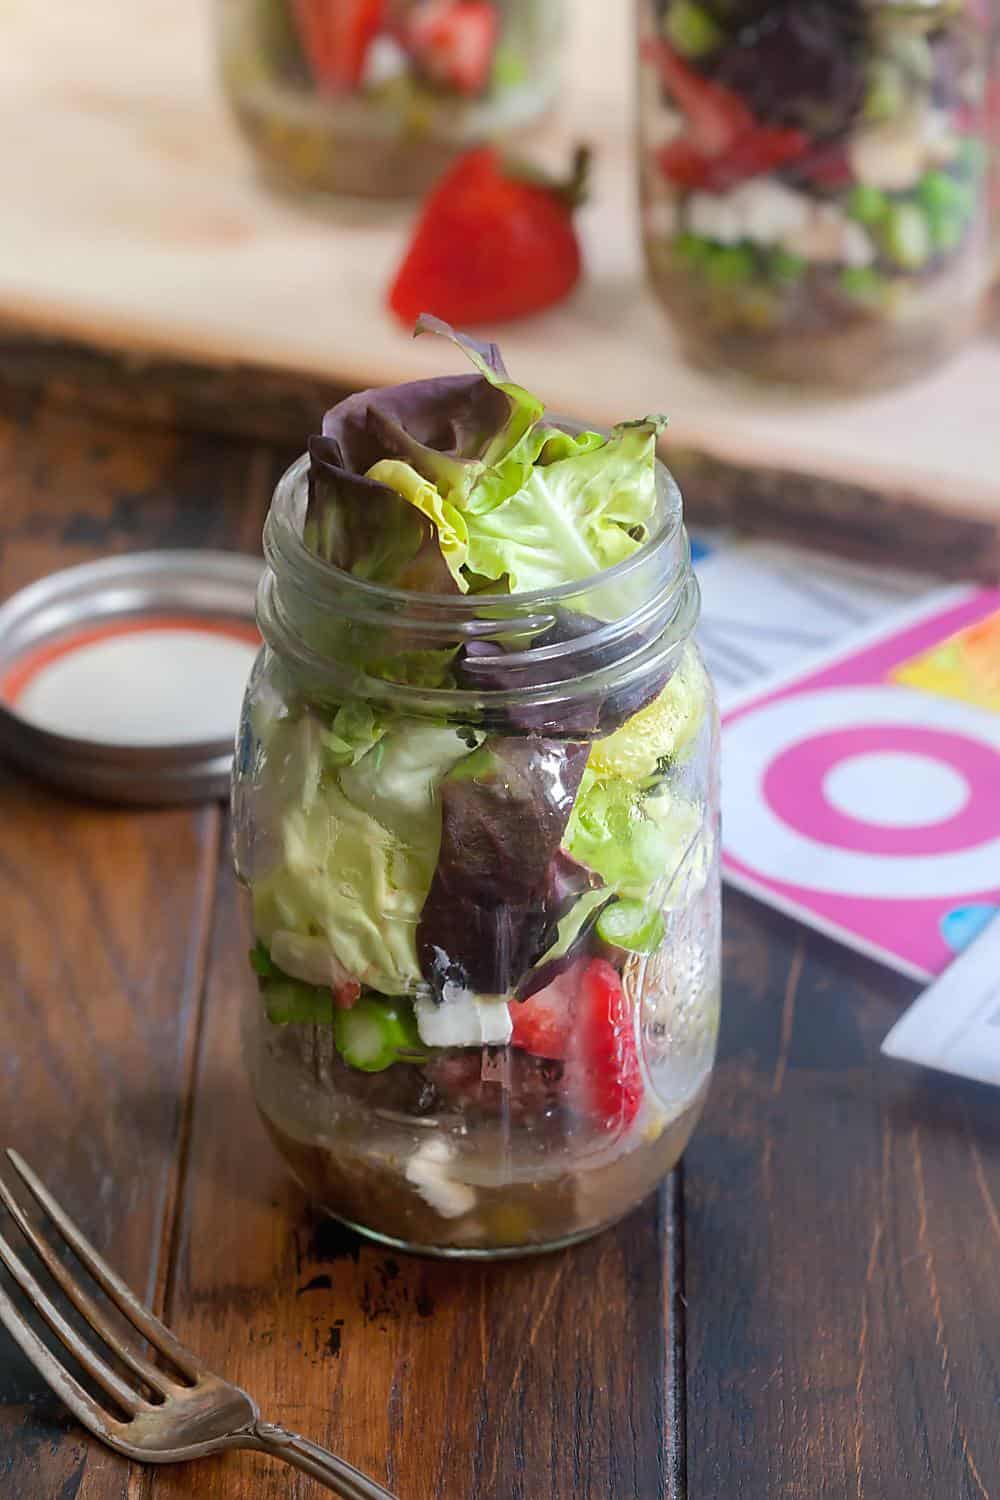 Strawberry Asparagus Salad in a Jar